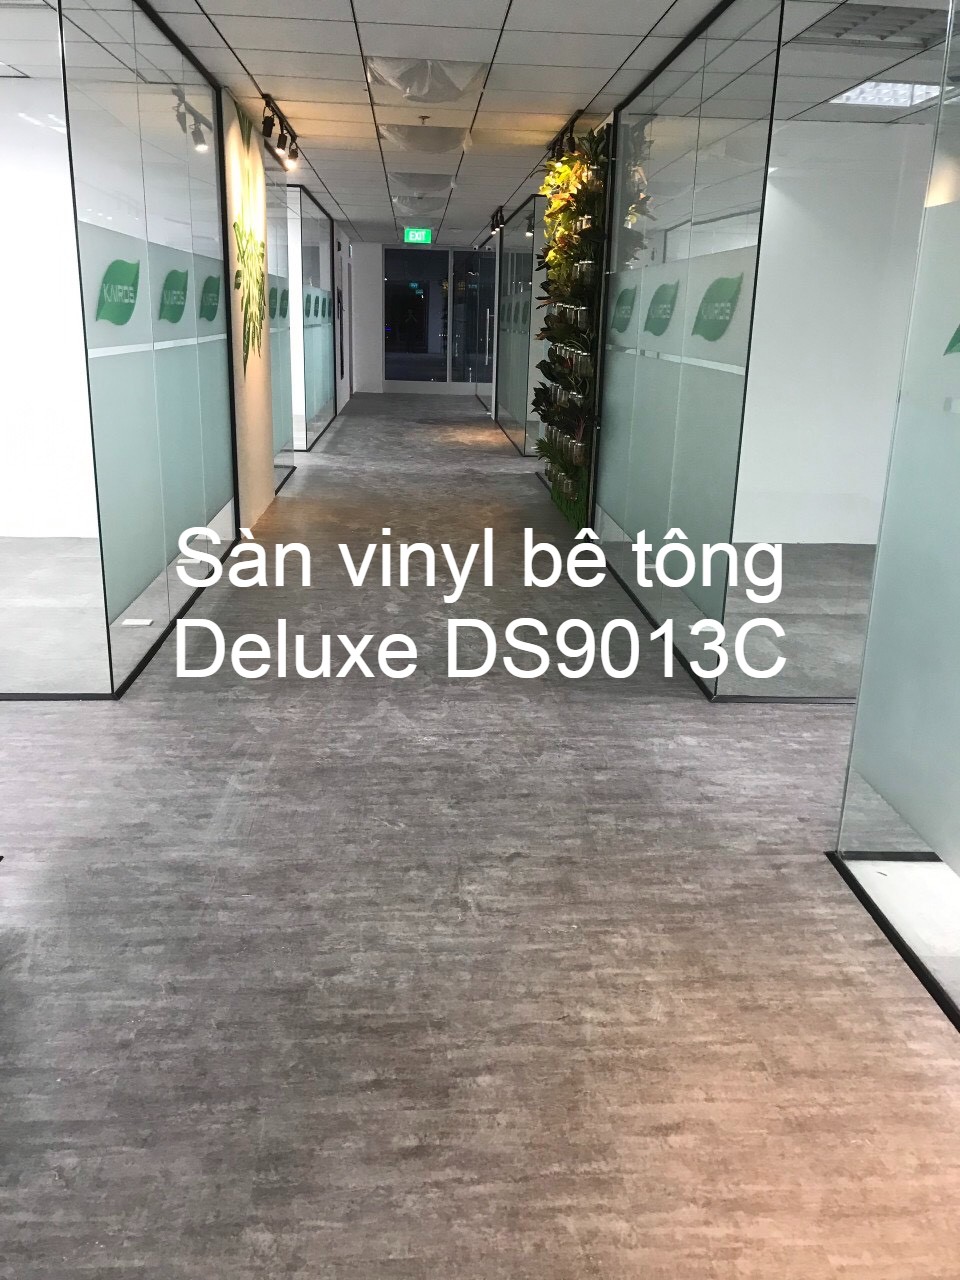 sàn vinyl bê tông ds9013c